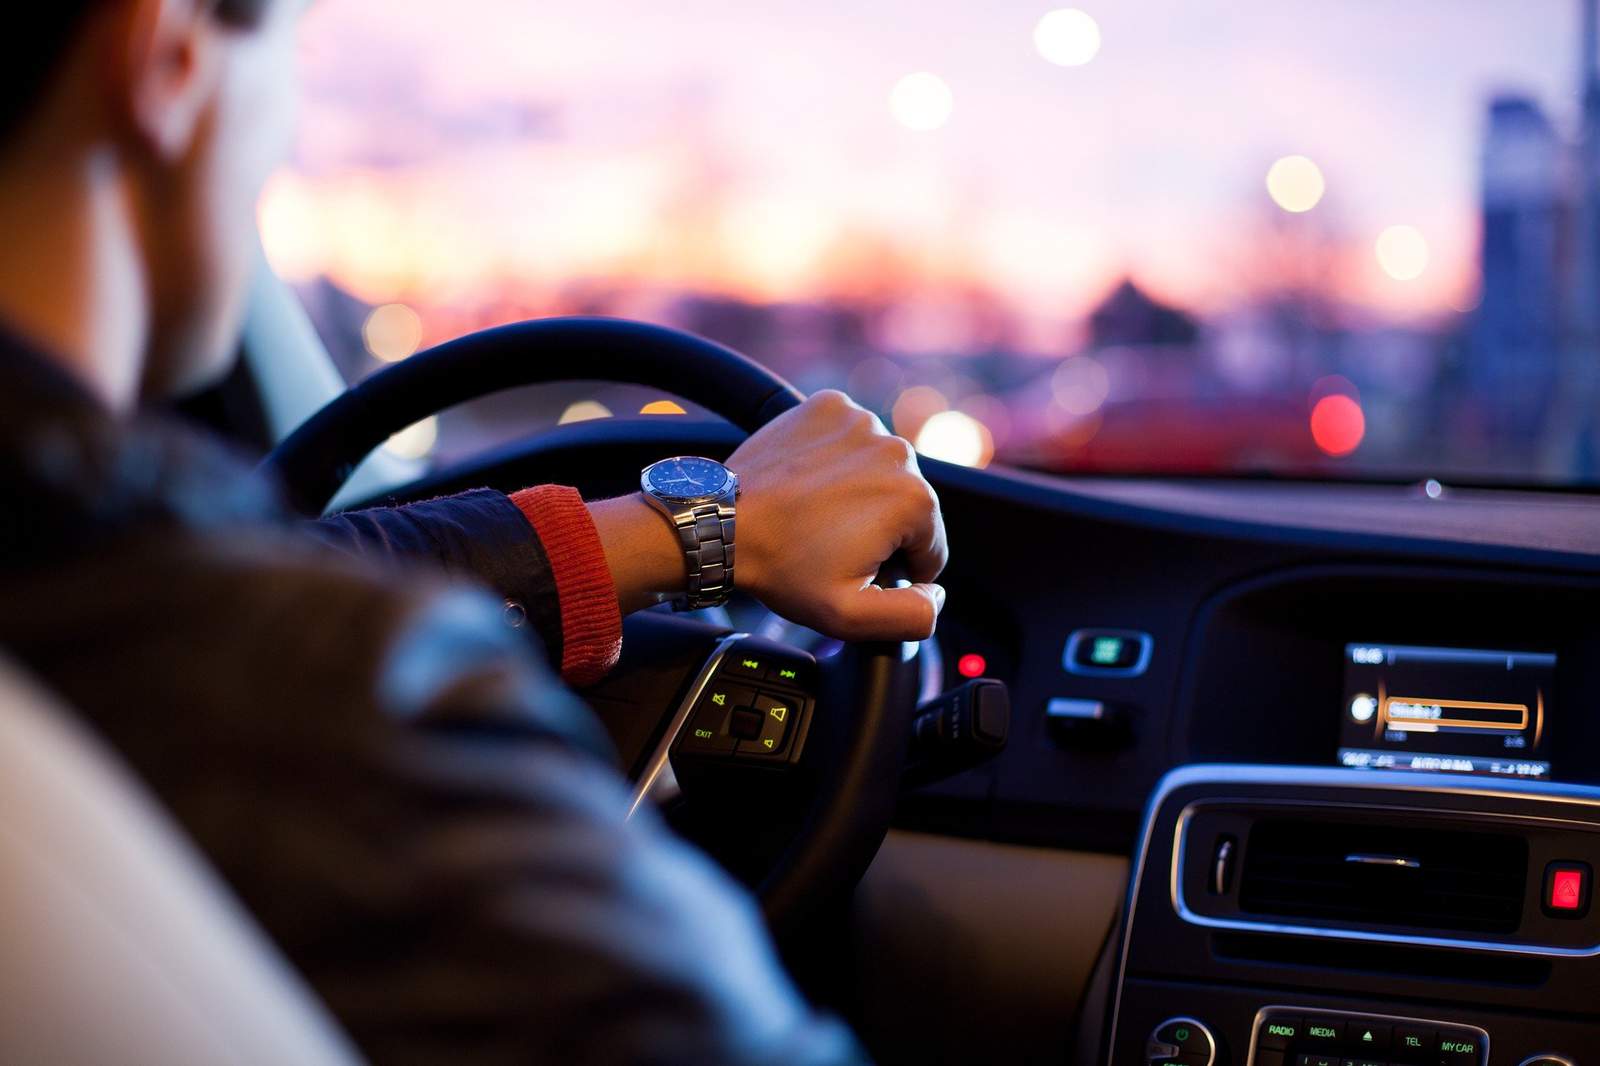 Risky driving: US traffic deaths up despite virus lockdowns